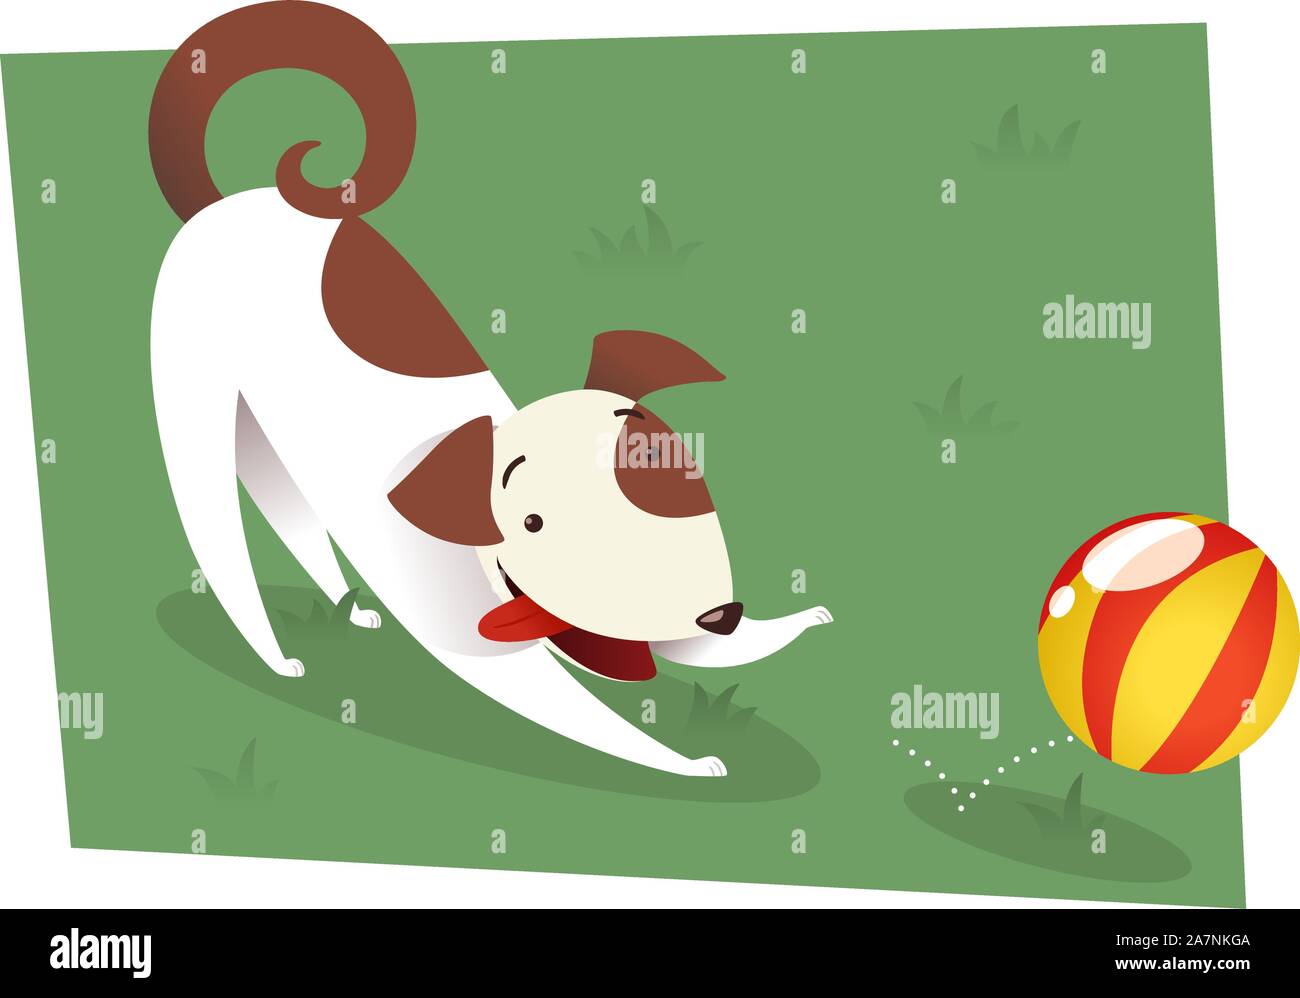 Hund spielen, um die roten und gelben Ball zu fangen. Braune und weiße Hund spielen auf dem Rasen oder einen formellen Garten mit einem Ball-Vektor-Illustration. Stock Vektor